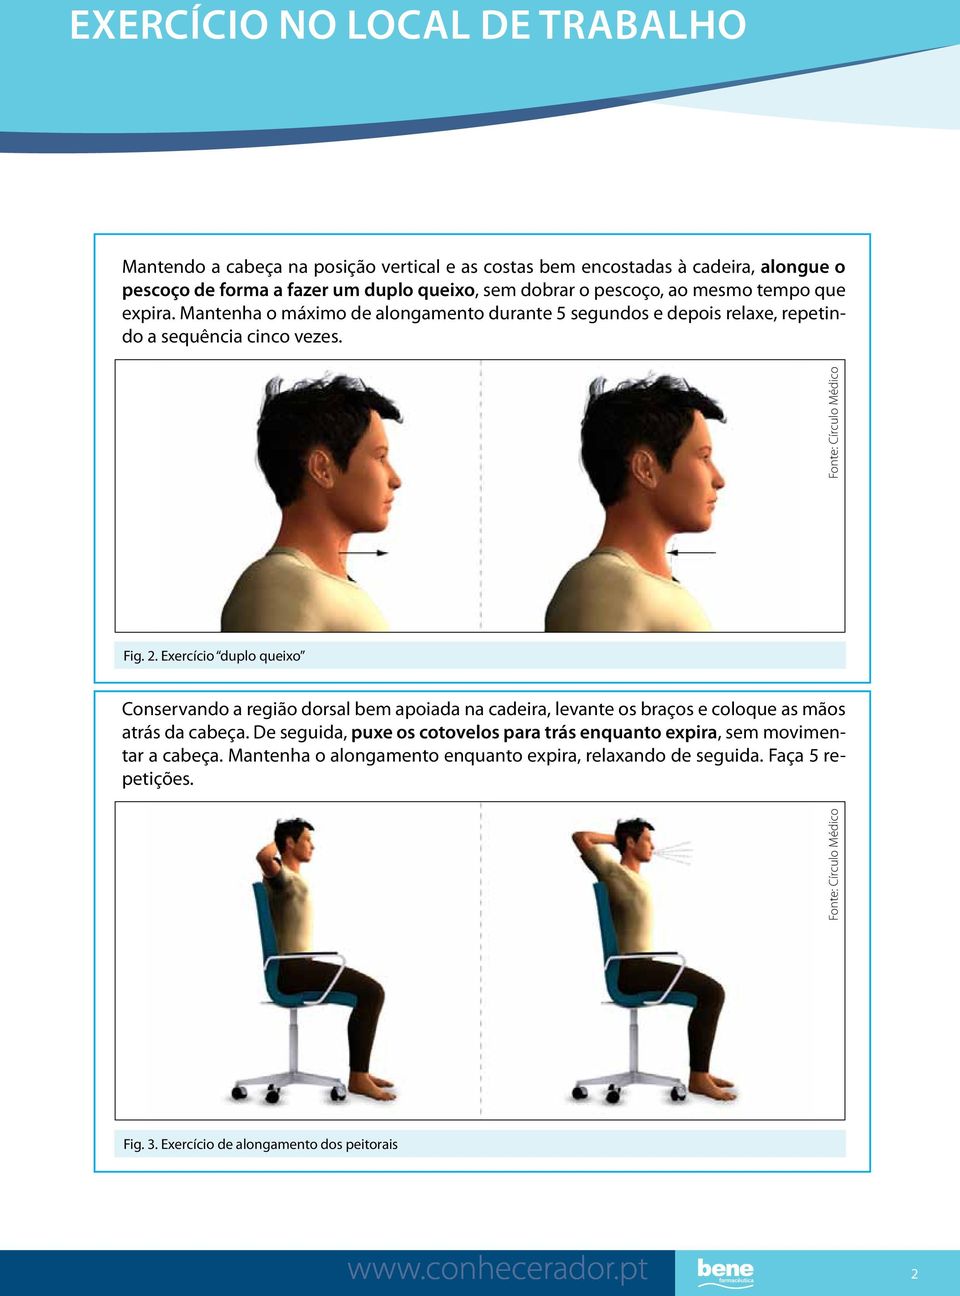 Exercício duplo queixo Conservando a região dorsal bem apoiada na cadeira, levante os braços e coloque as mãos atrás da cabeça.